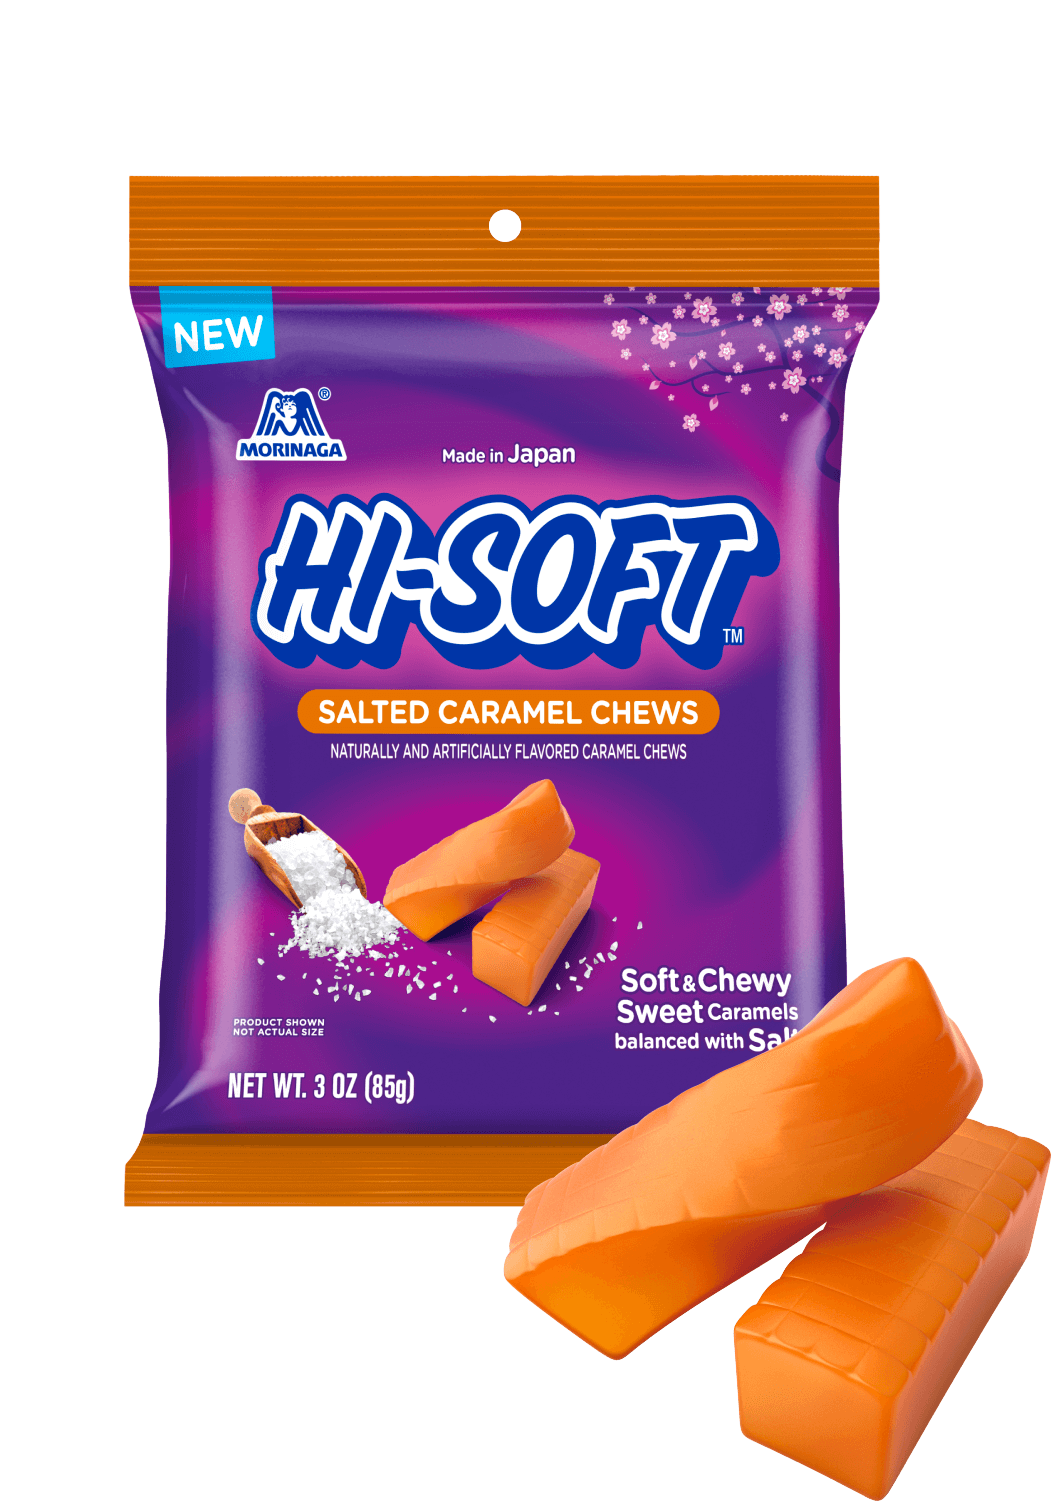 HI-SOFT™ Product